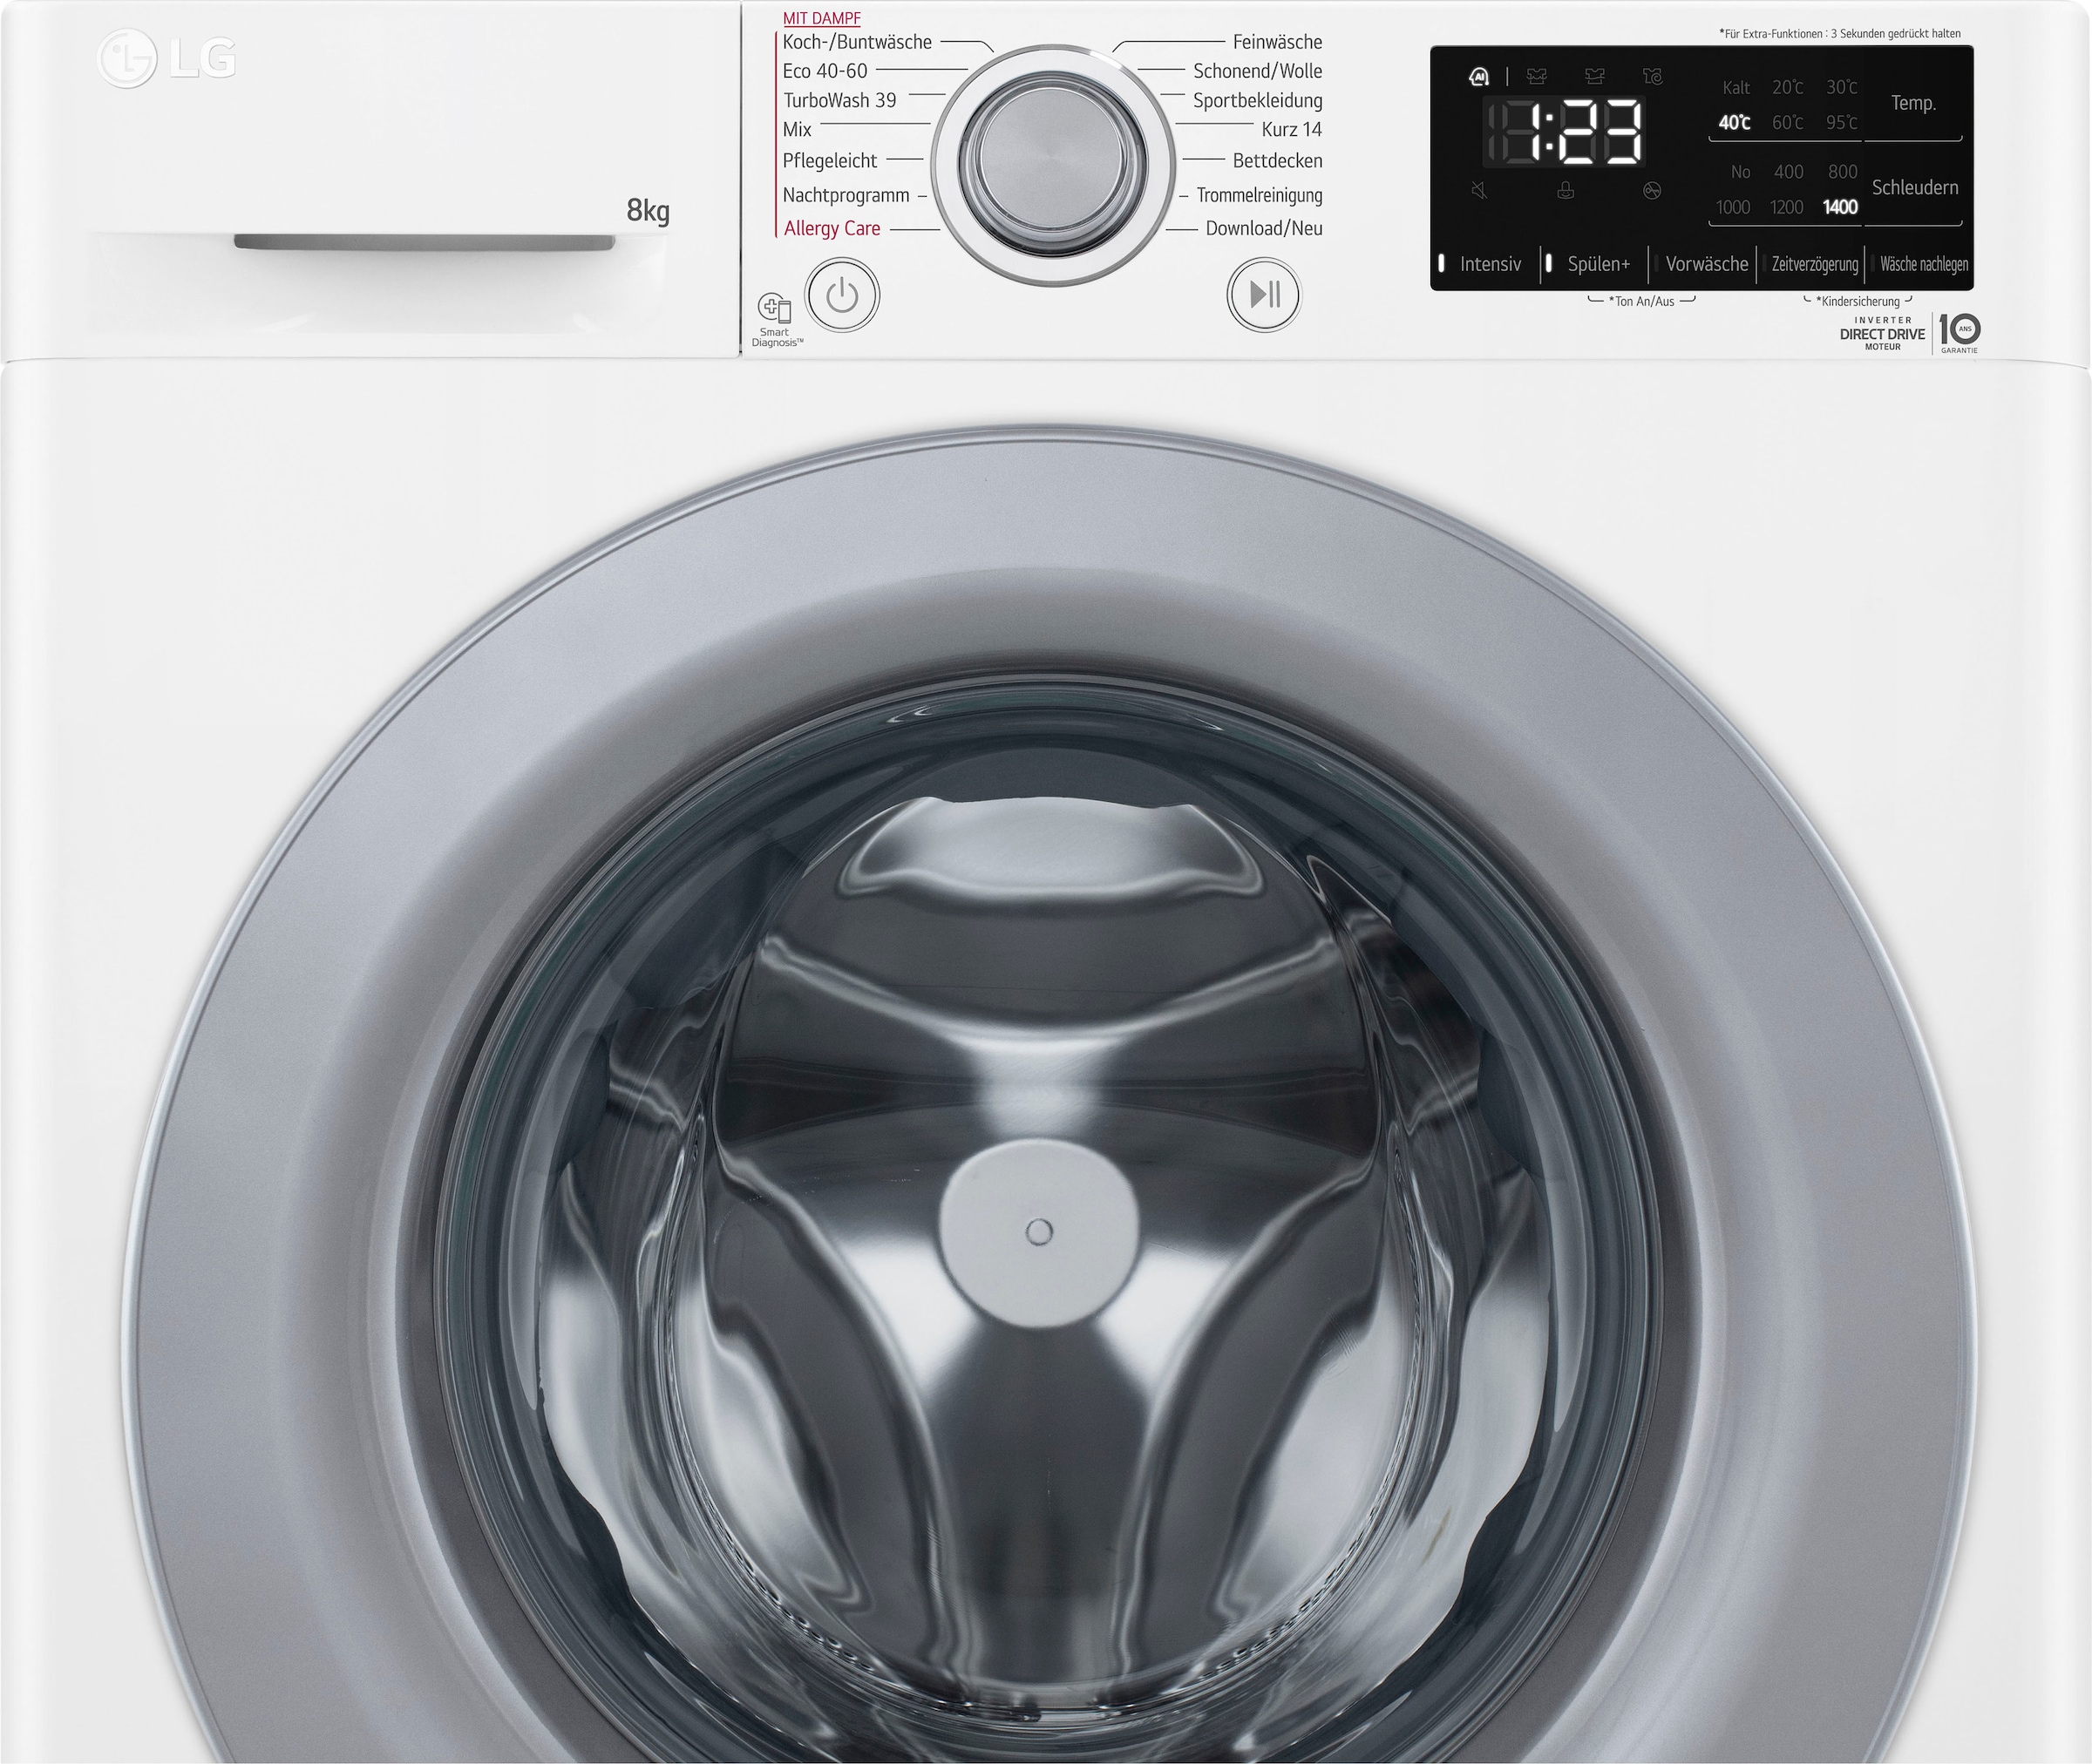 LG Waschmaschine »F4WV3284«, Serie 3, 1400 F4WV3284, OTTO bestellen U/min 8 kg, bei